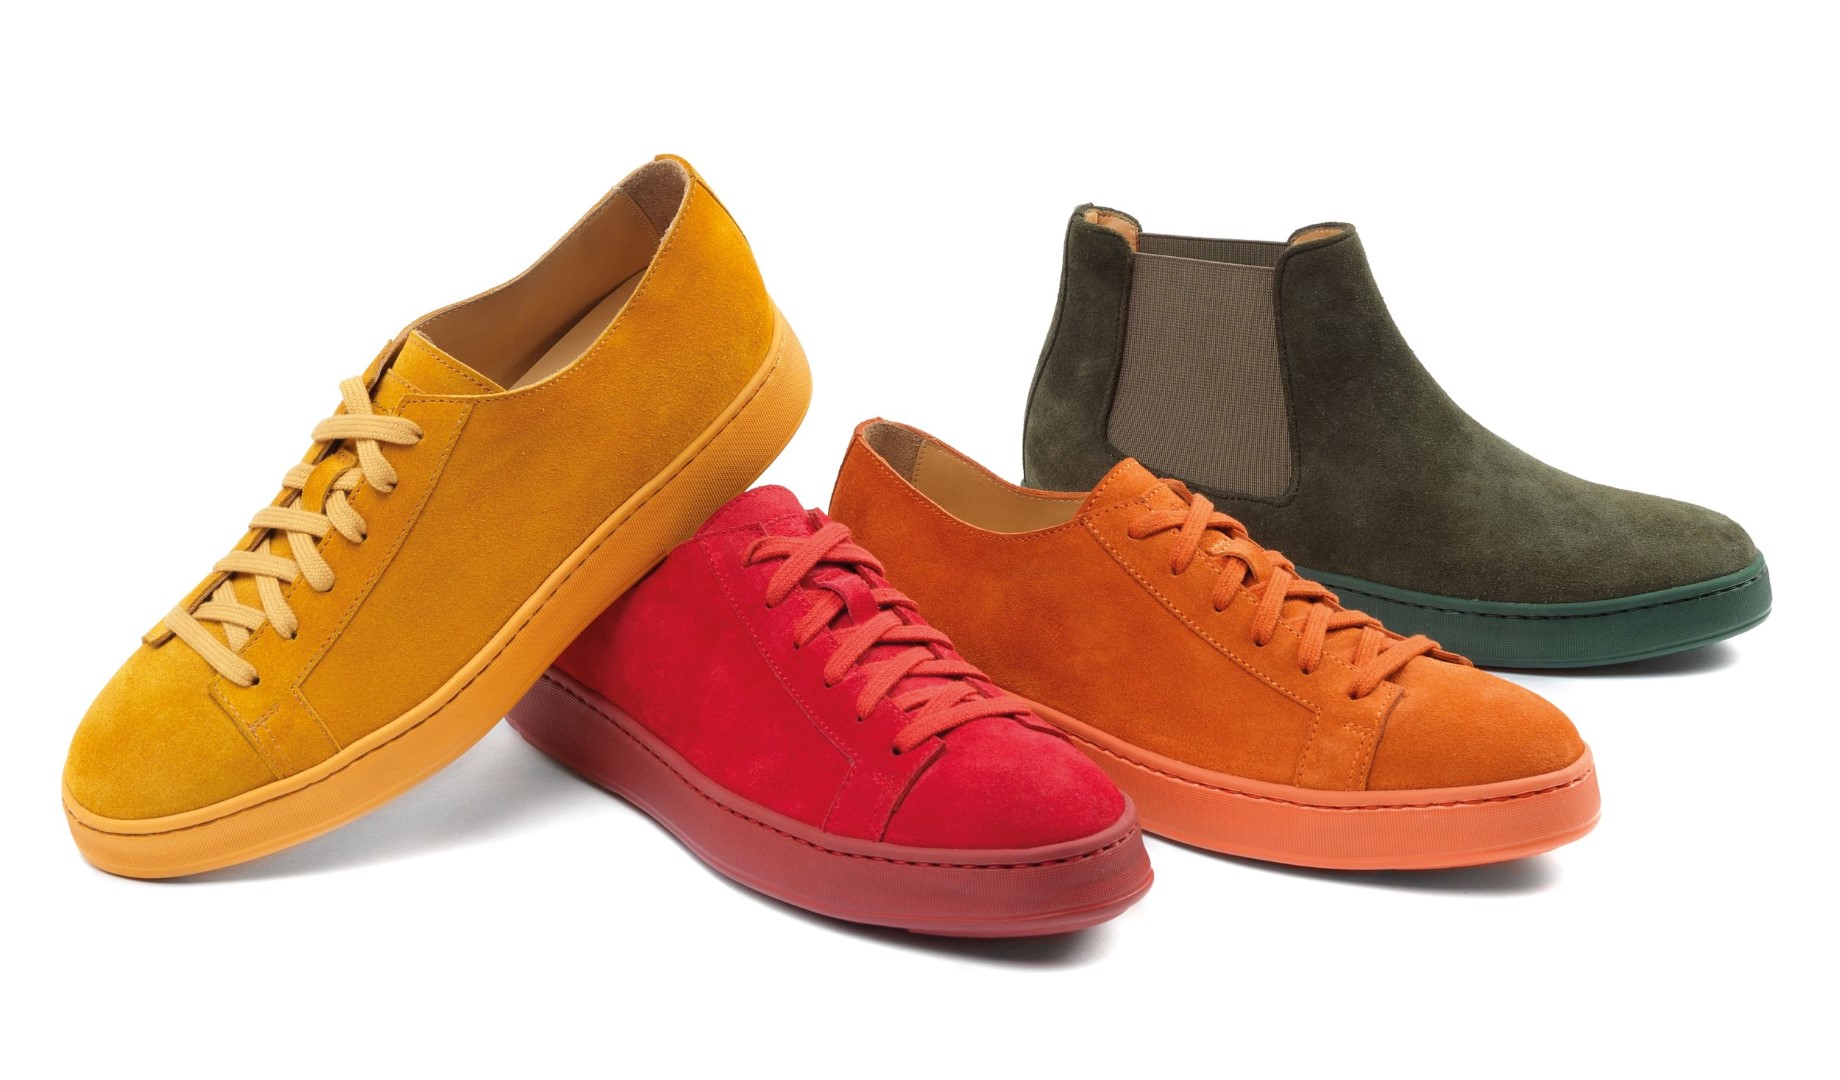 Santoni scarpe autunno inverno 2015 2016: le sneakers flessibili, colorate e super leggere